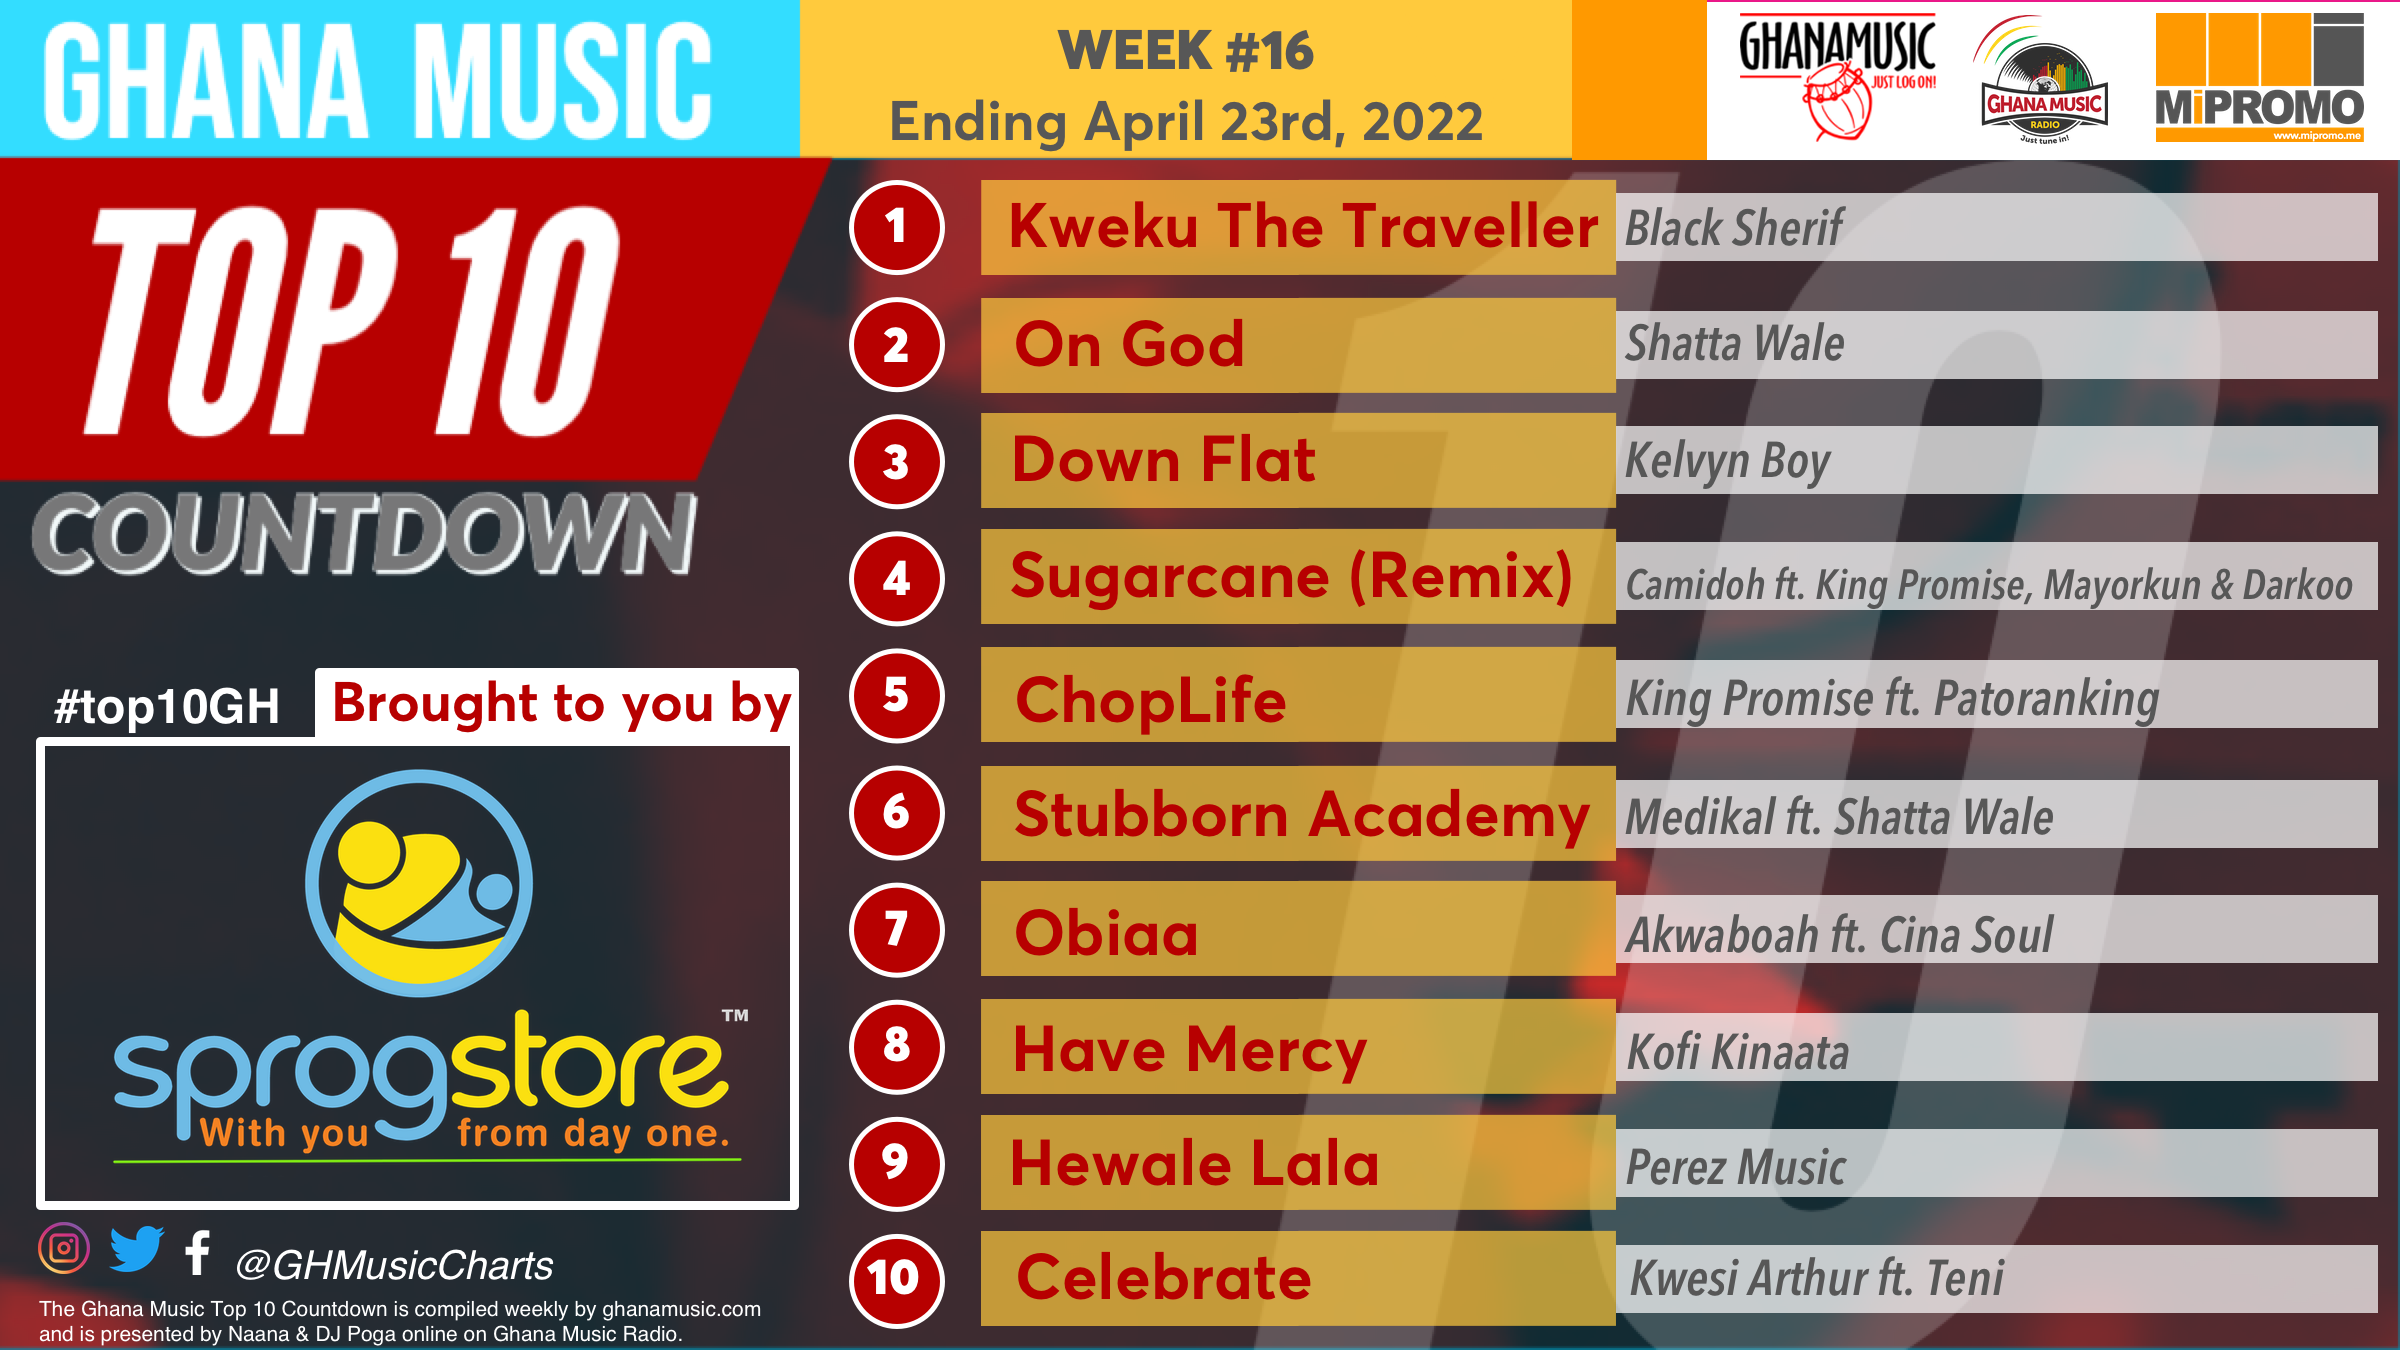 2022 Week 16: Ghana Music Top 10 Countdown